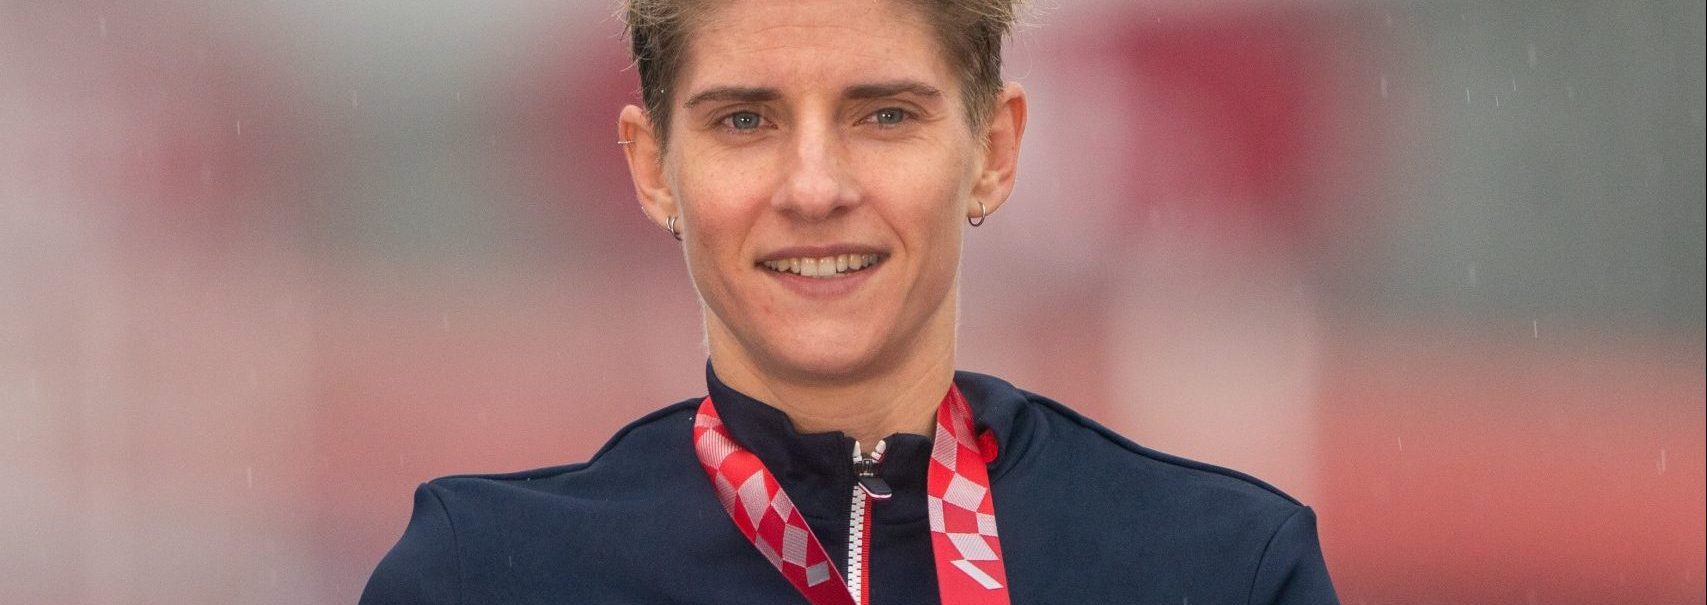 Marie Patouillet remporte le bronze en course en ligne lors des Jeux paralympiques de tokyo